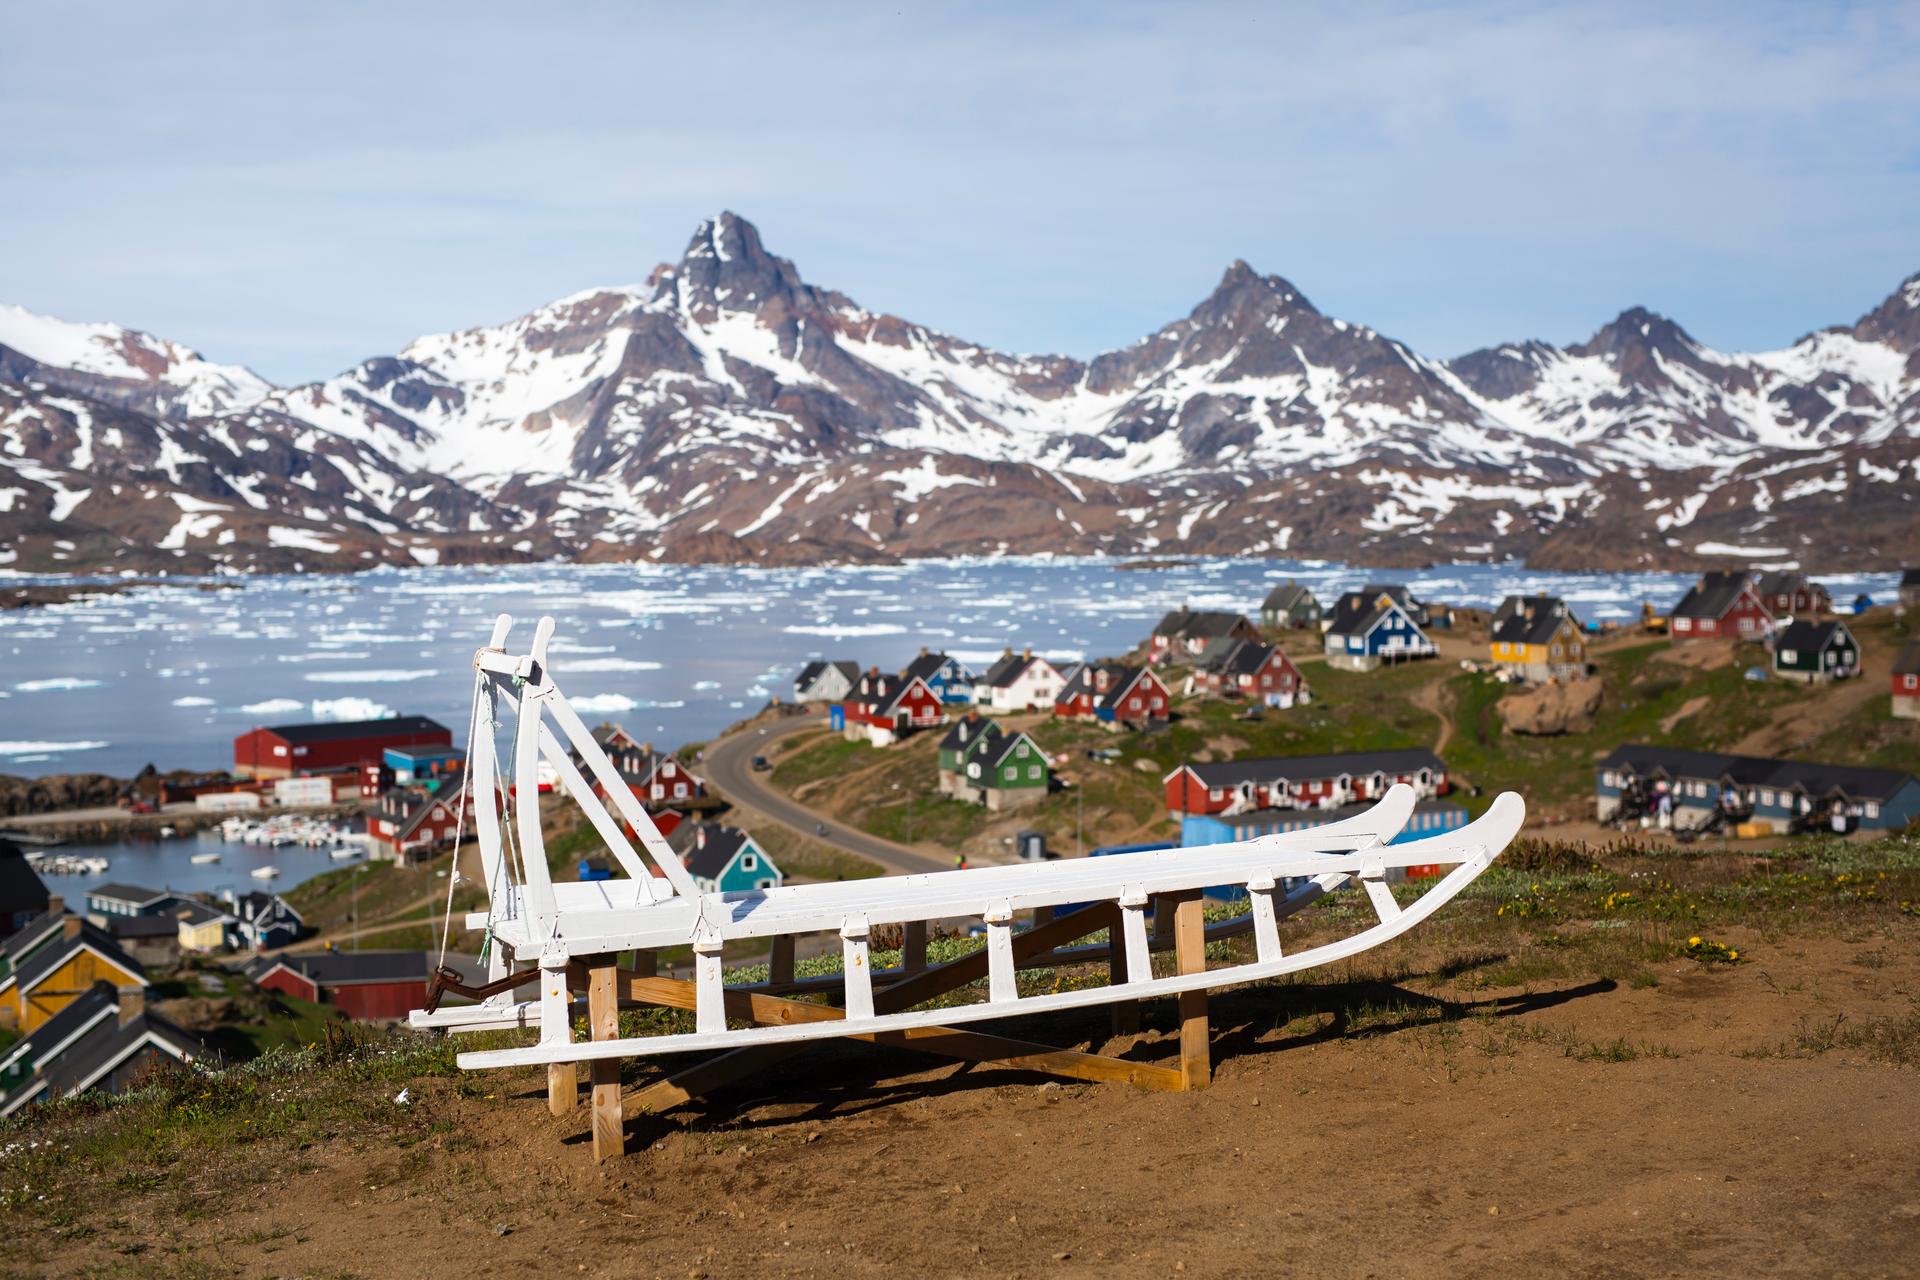 KajakkØstGrønland-2023@visit-greenland-X-UJcDmaeew-unsplash